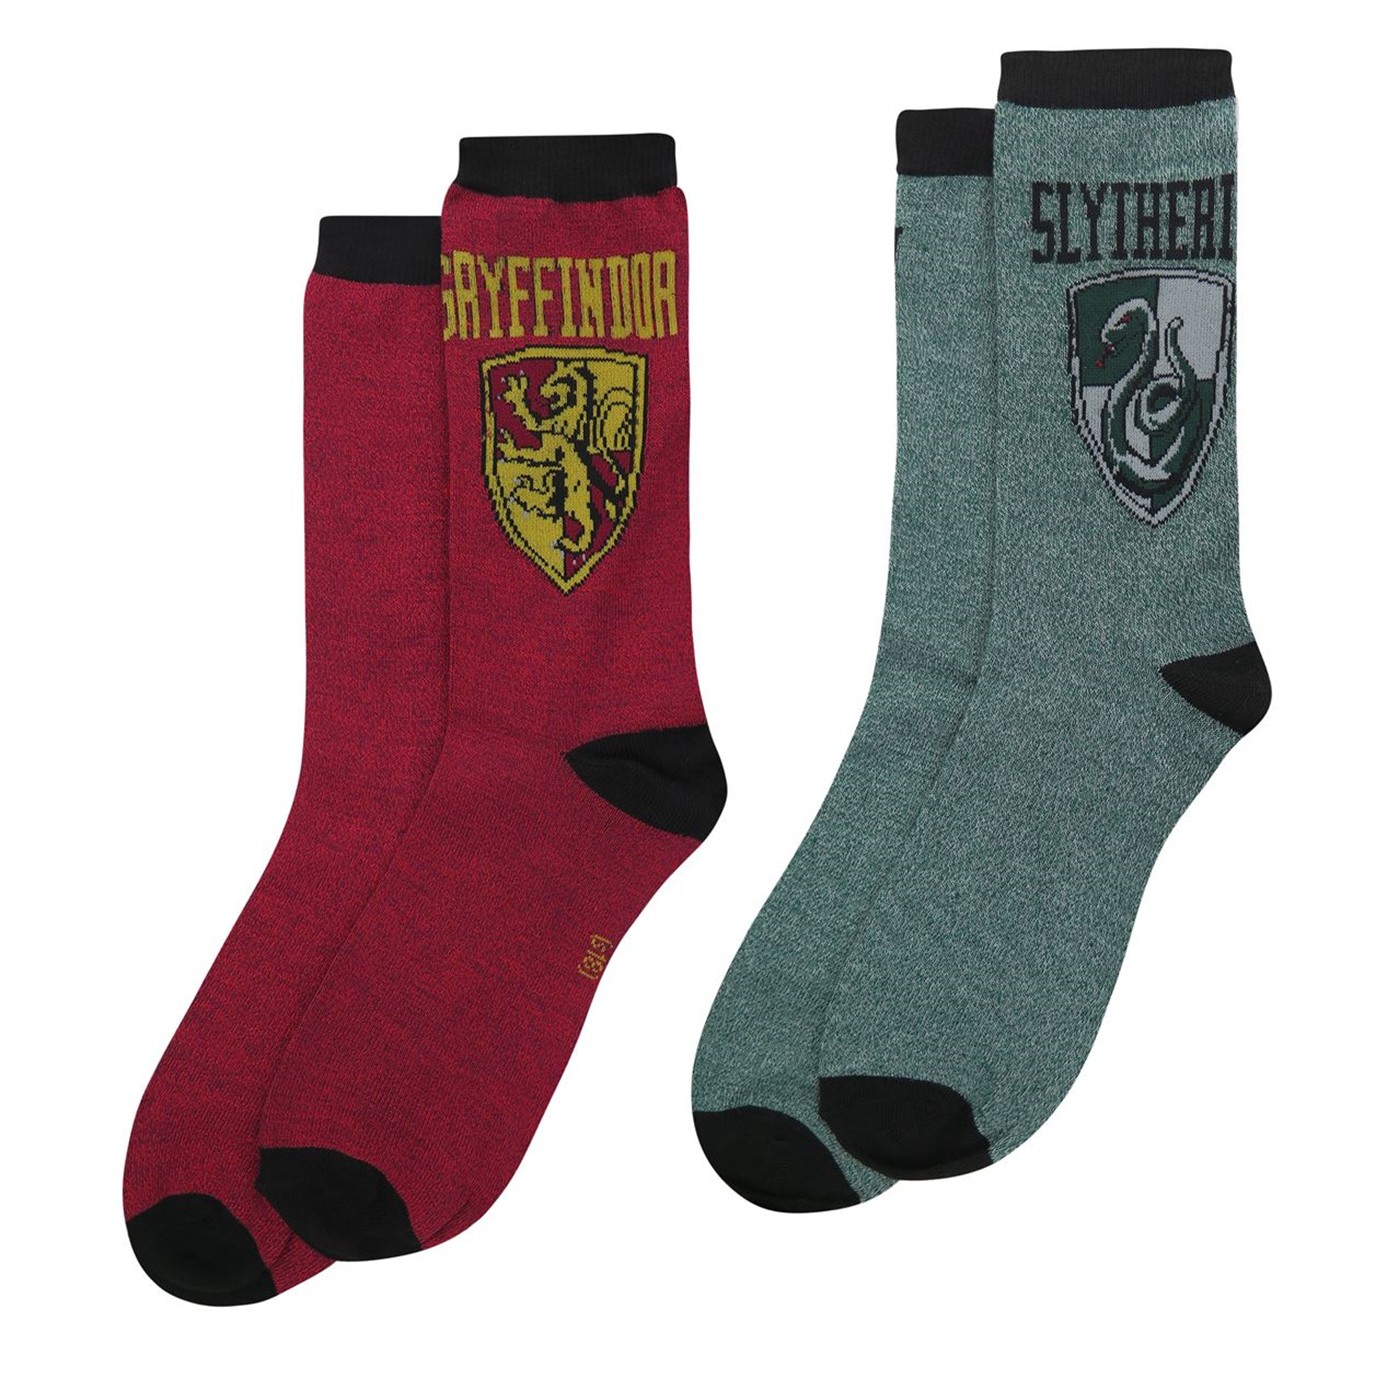 Harry Potter Gryffindor & Slytherin Crew Socks 2-Pack